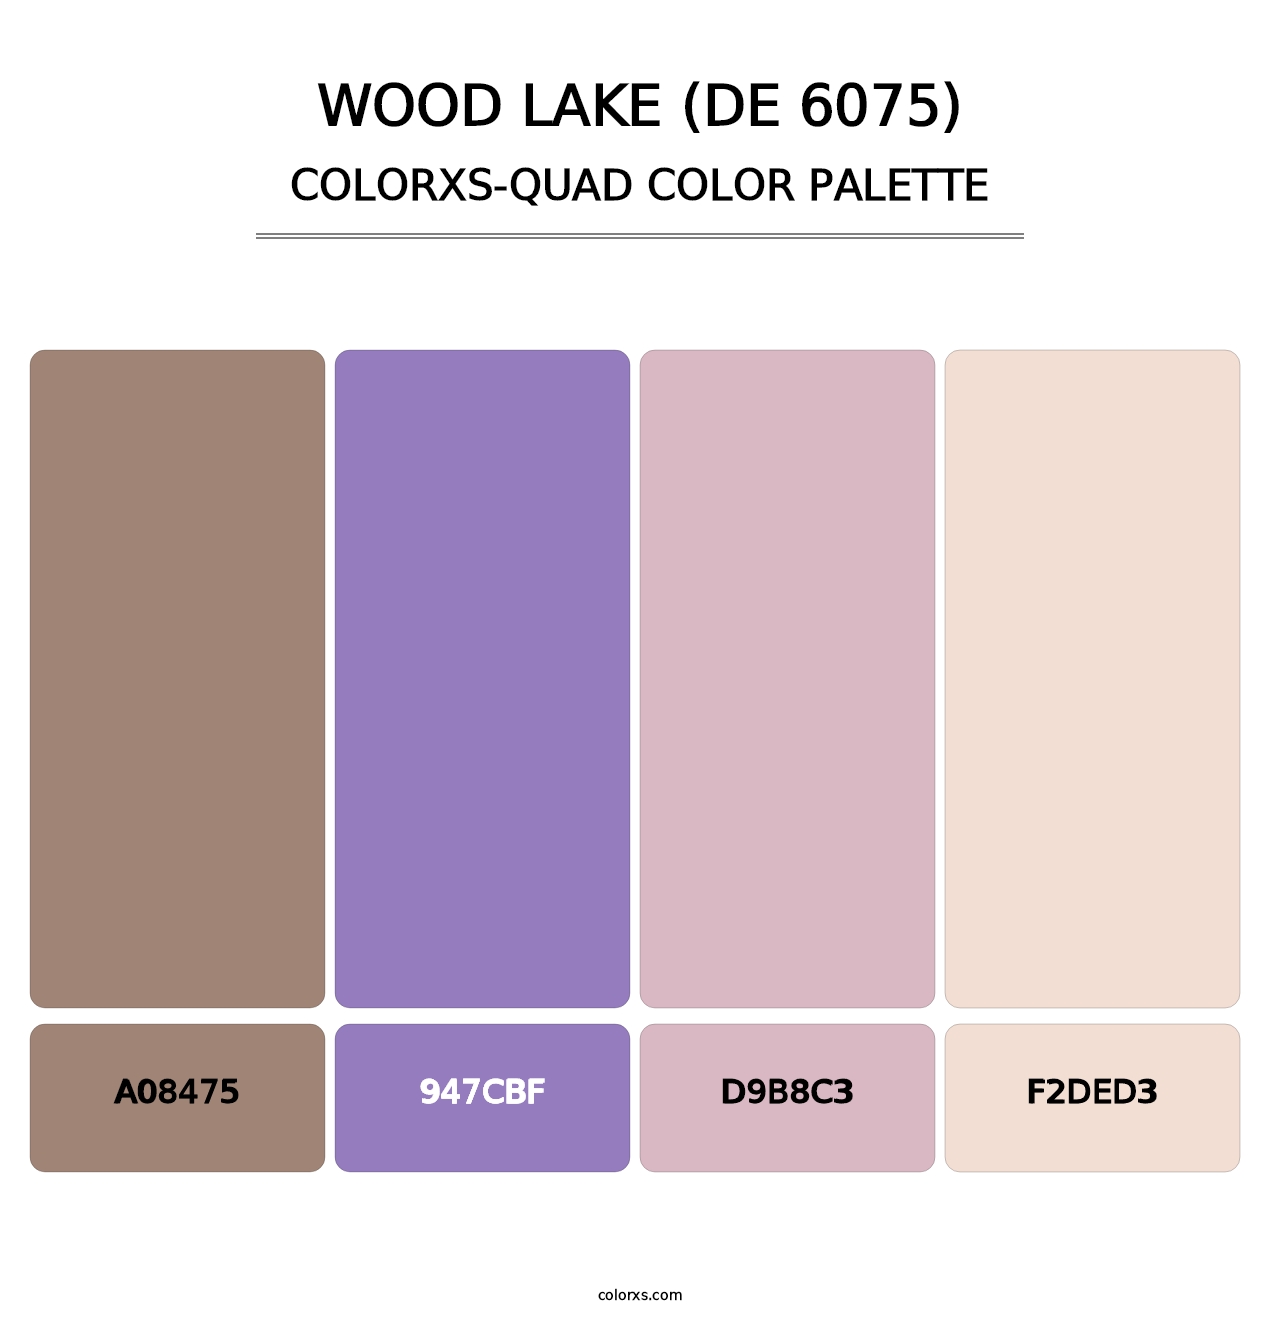 Wood Lake (DE 6075) - Colorxs Quad Palette